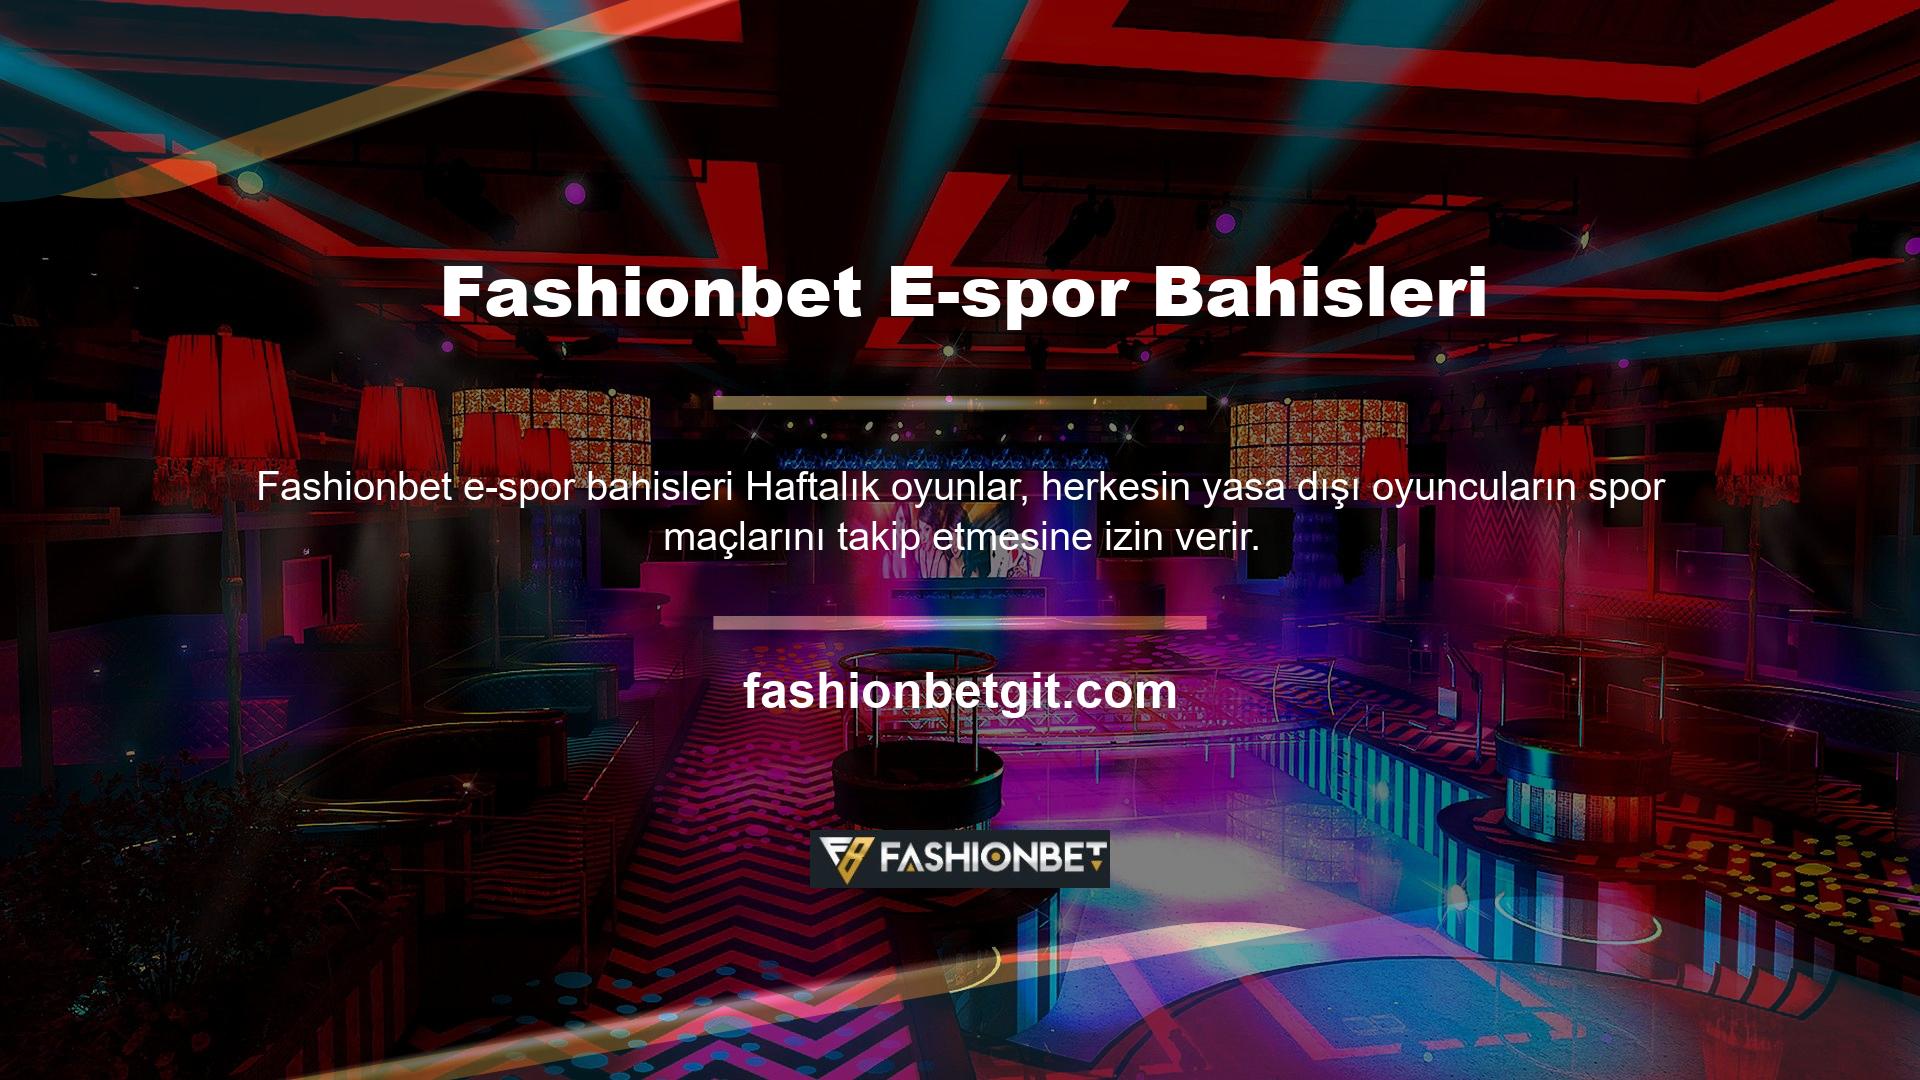 Gösteri, futbol ve basketbolun yanı sıra Fashionbet E-spor içeriğine özel olarak yayınlanacak